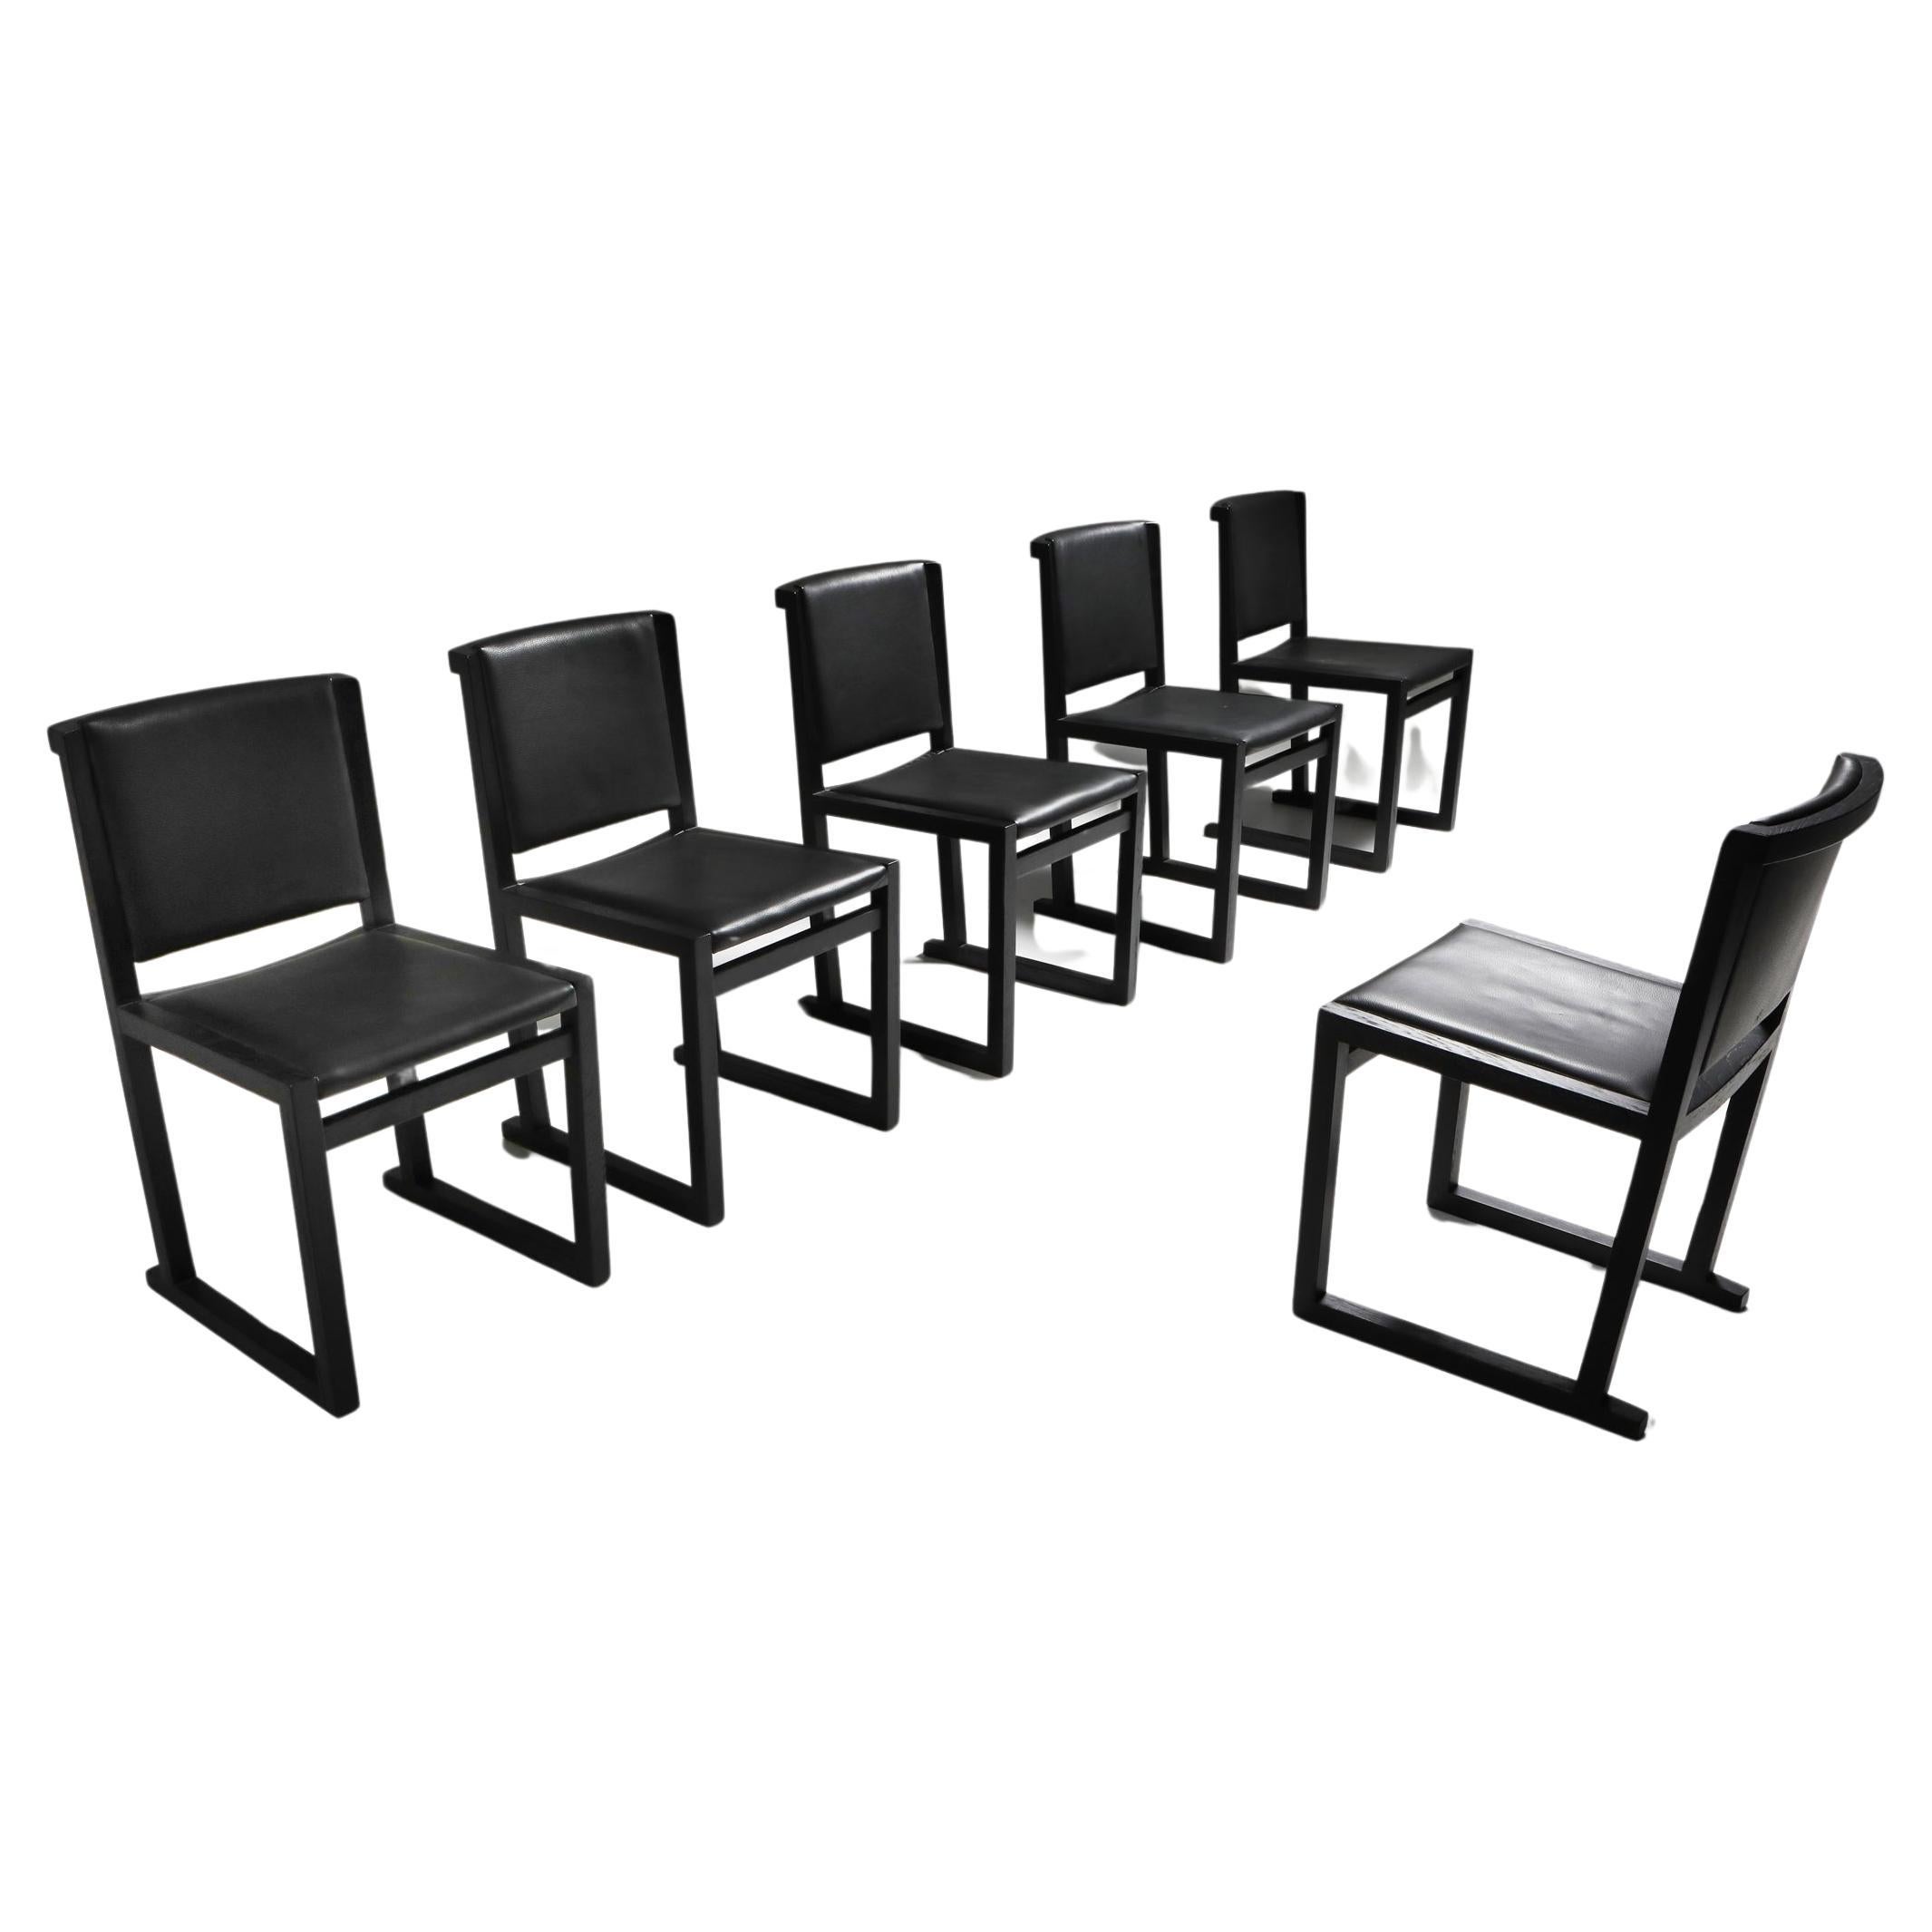 Maxalto Esszimmerstühle aus ebonisierter Eiche, hergestellt von Antonio Citterio im Jahr 2004, ein eindrucksvolles Beispiel für zeitgenössisches Möbeldesign. Antonio's Designkompetenz zeigt sich in den grazilen Linien und der Liebe zum Detail. Die